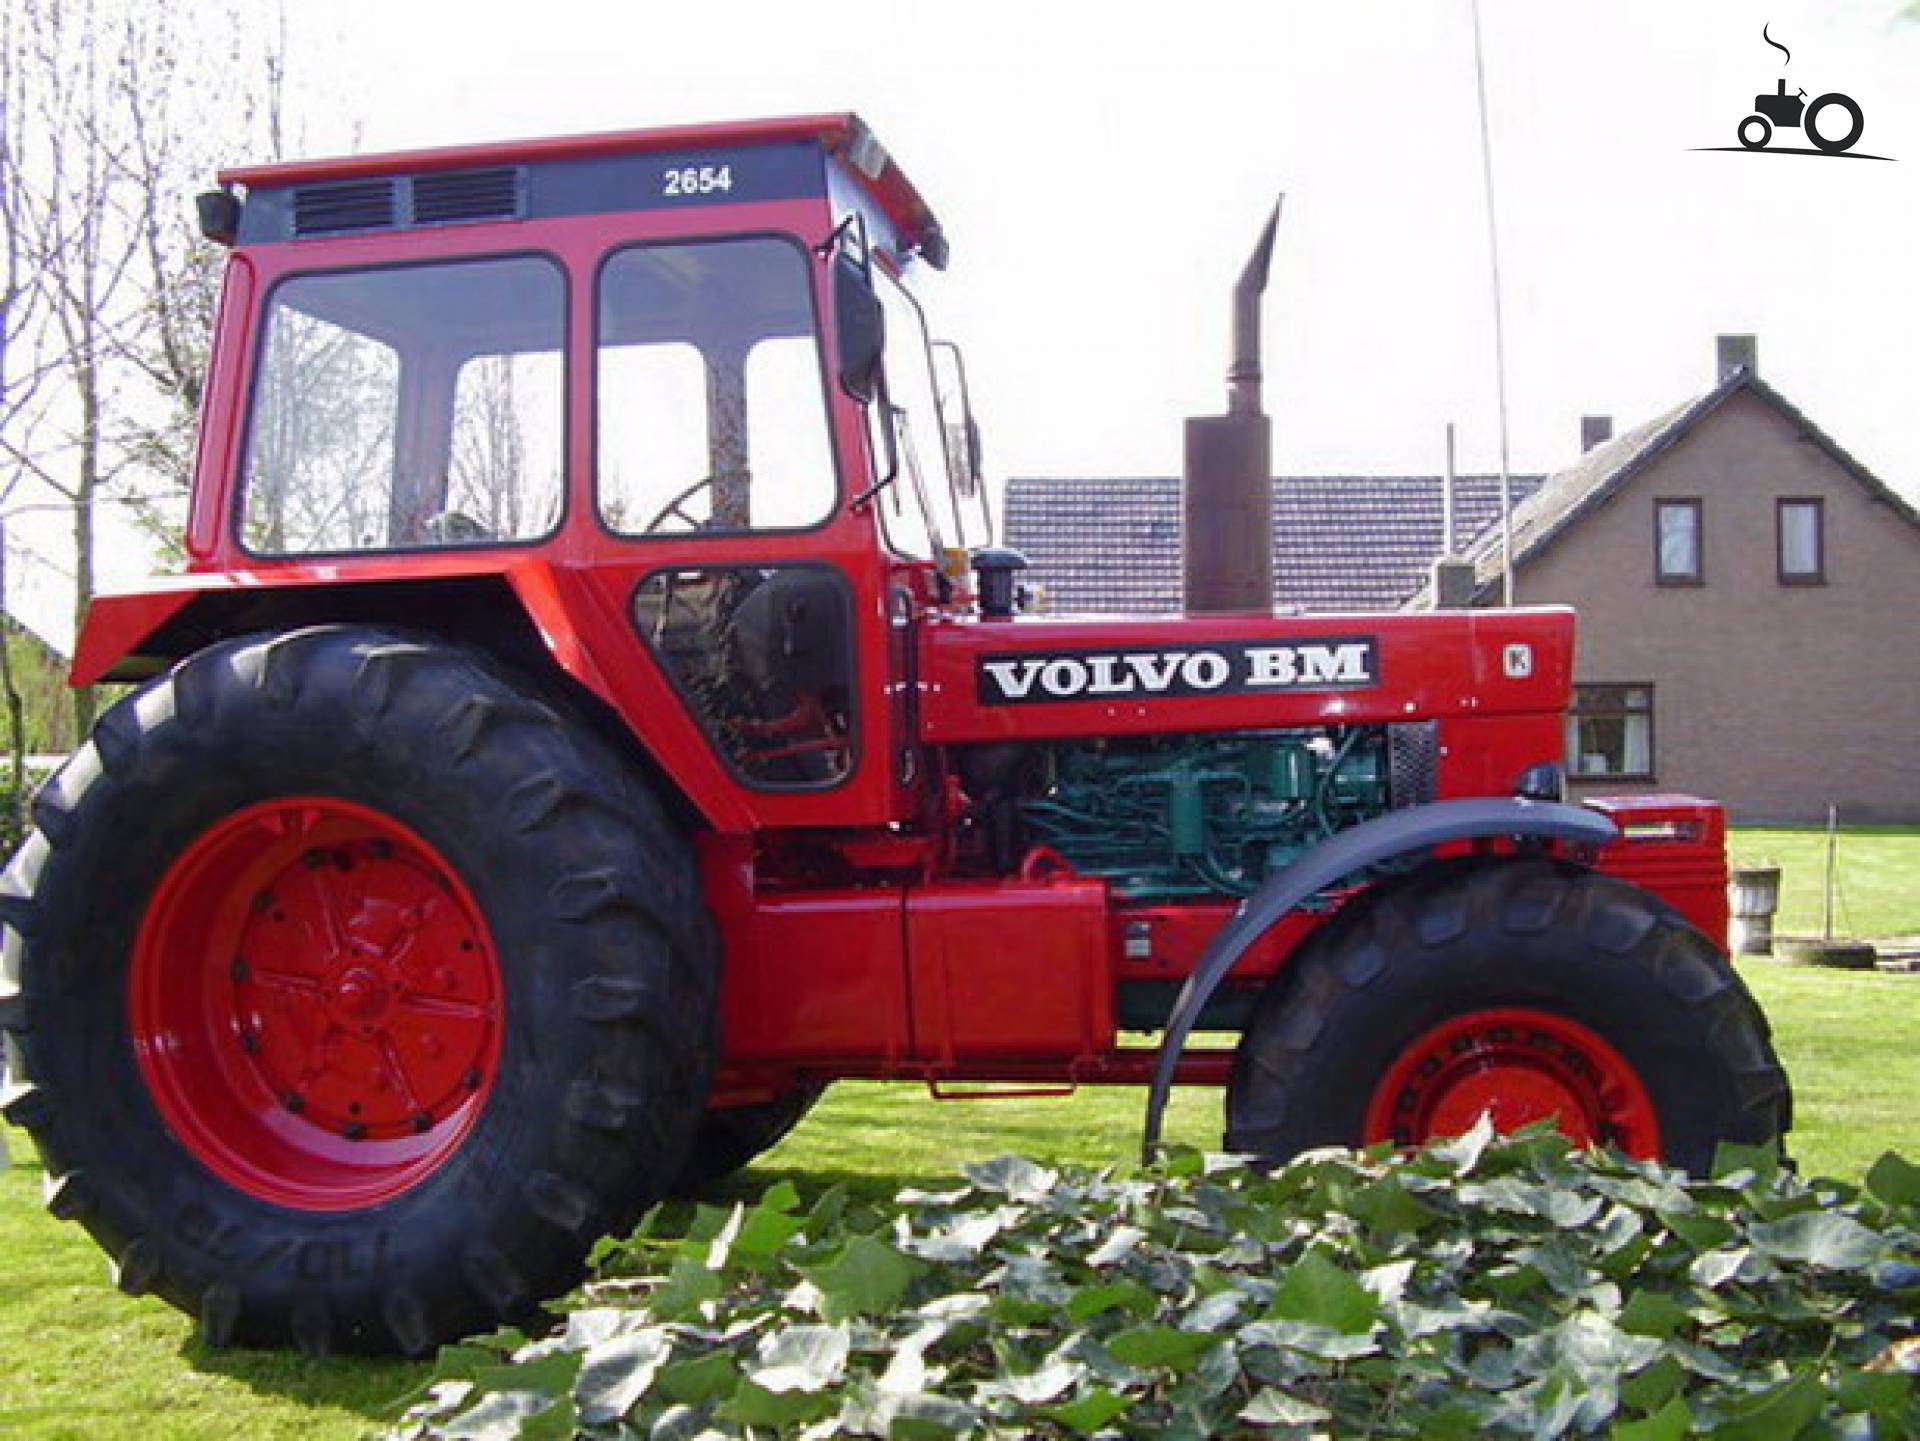 Volvo BM 2654